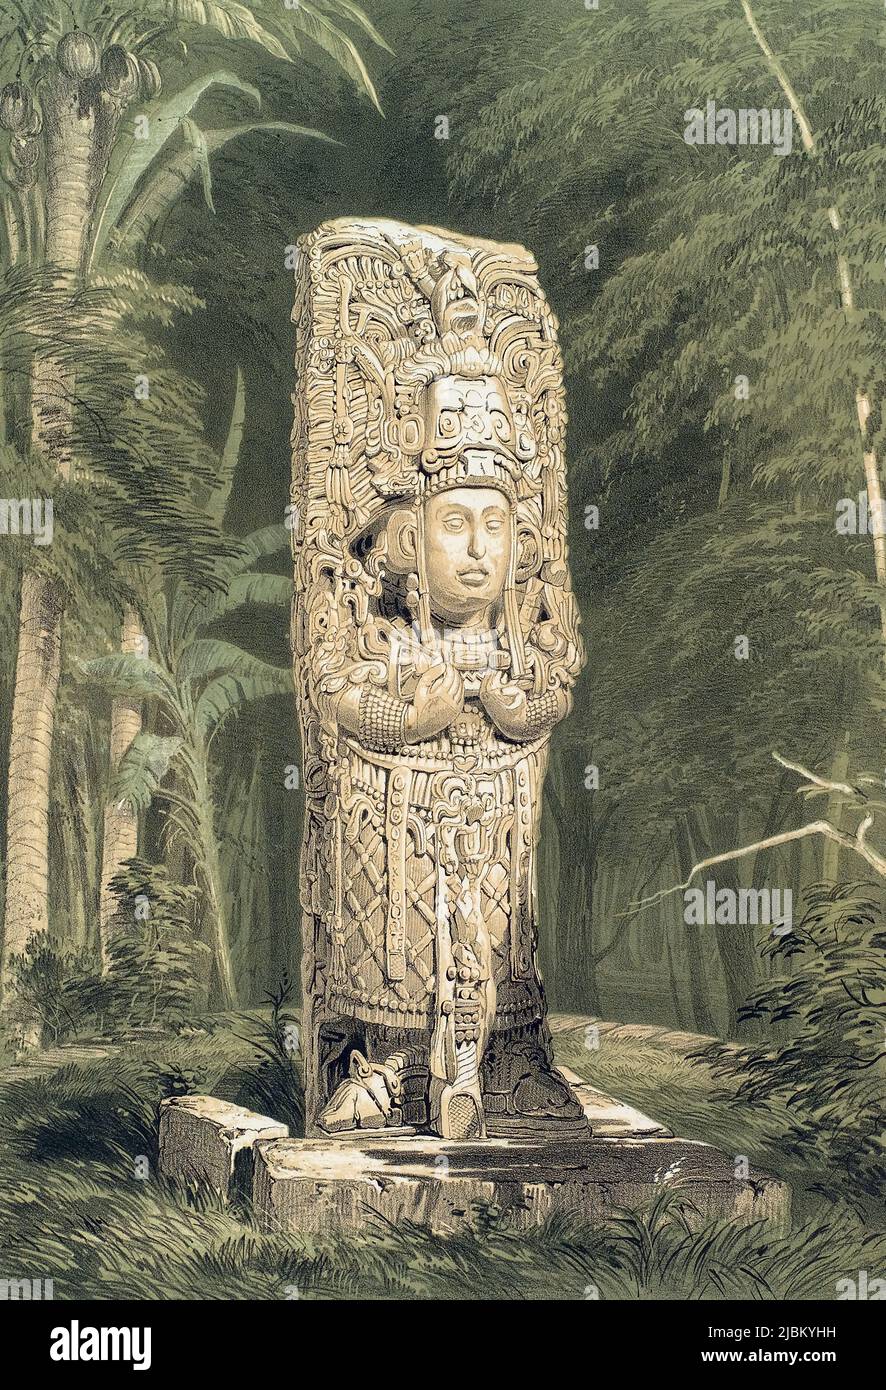 Une idole à Copan, au Honduras. Après une œuvre de Frederick Catherwood. L'idole maya de la ville maya est connue sous le nom de Stela H et représente le roi Uaxaclajuun Ub'aah K'awiil. Il date du 8th siècle. Banque D'Images